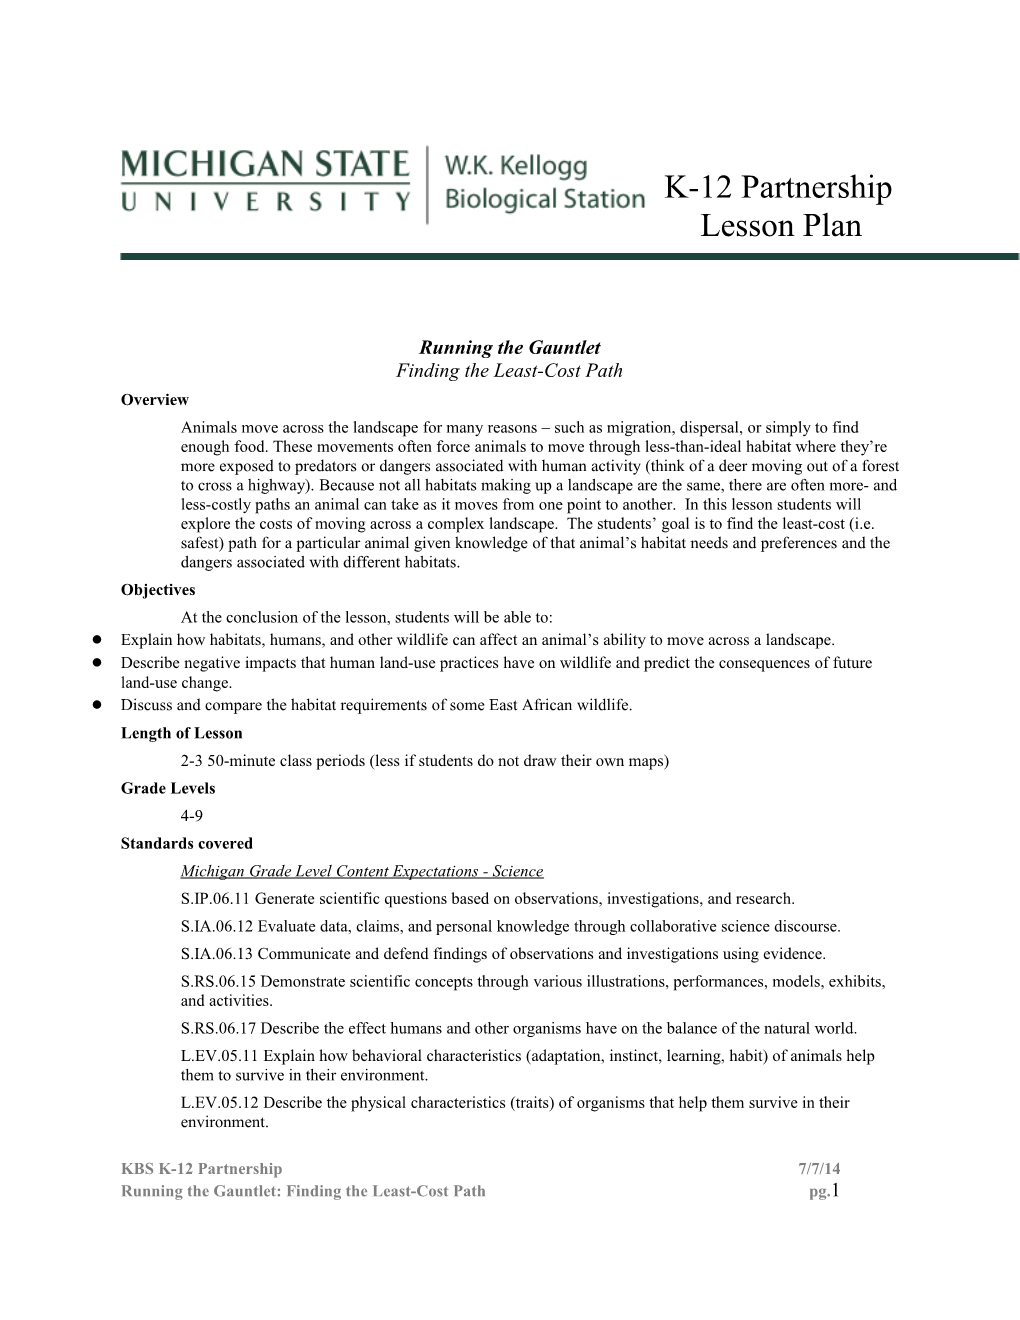 K-12 Partnership Lesson Plan